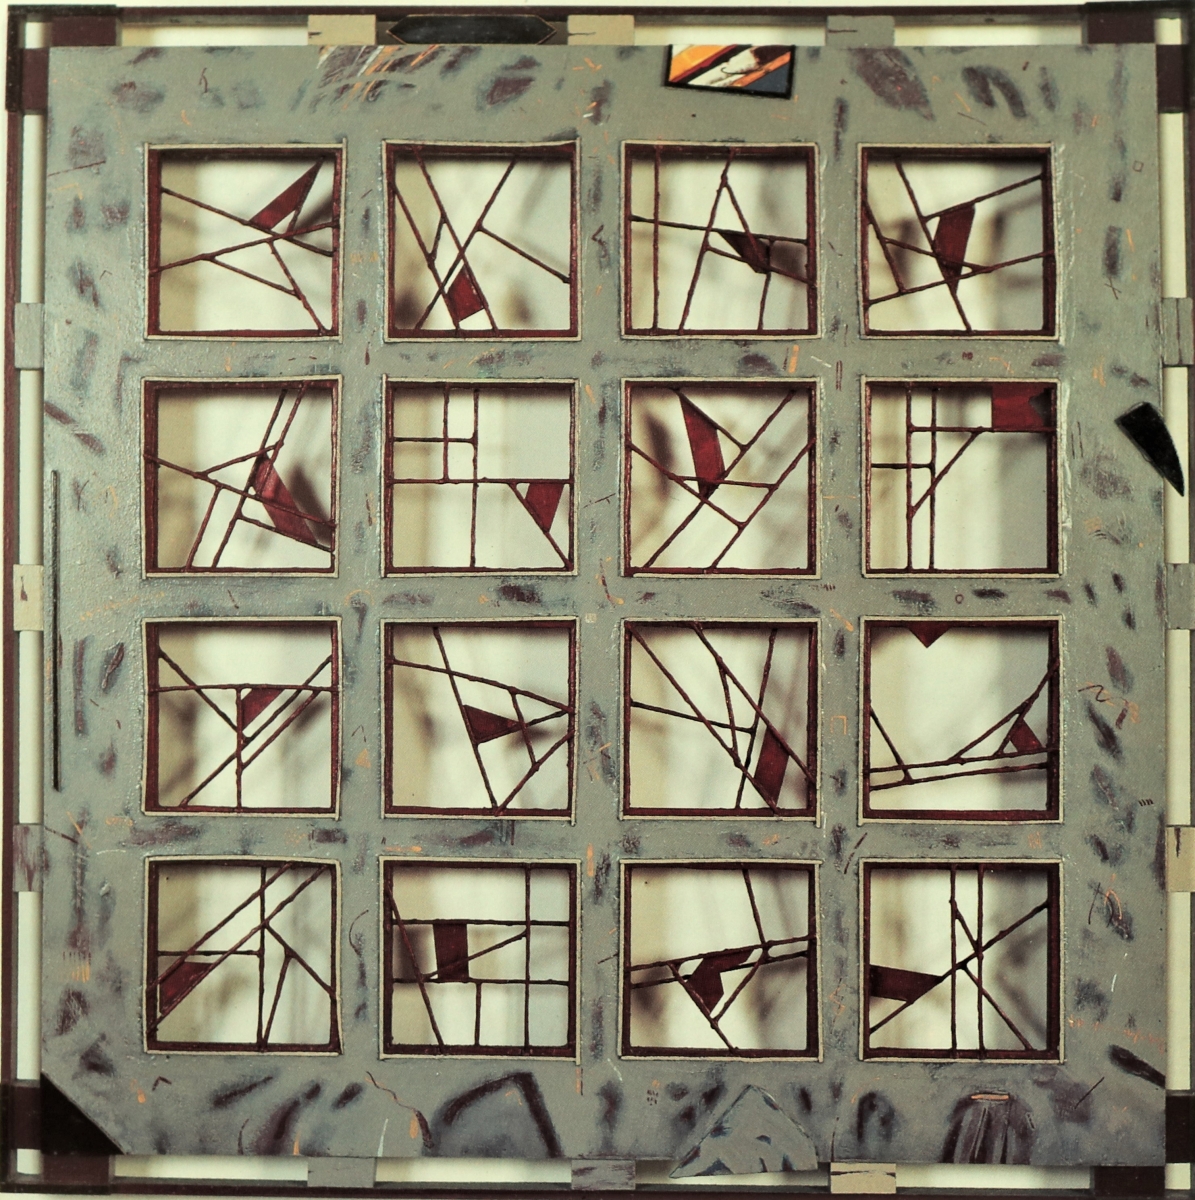 Jours de souffrance, 1990-91, Bois peint, 108x108cm